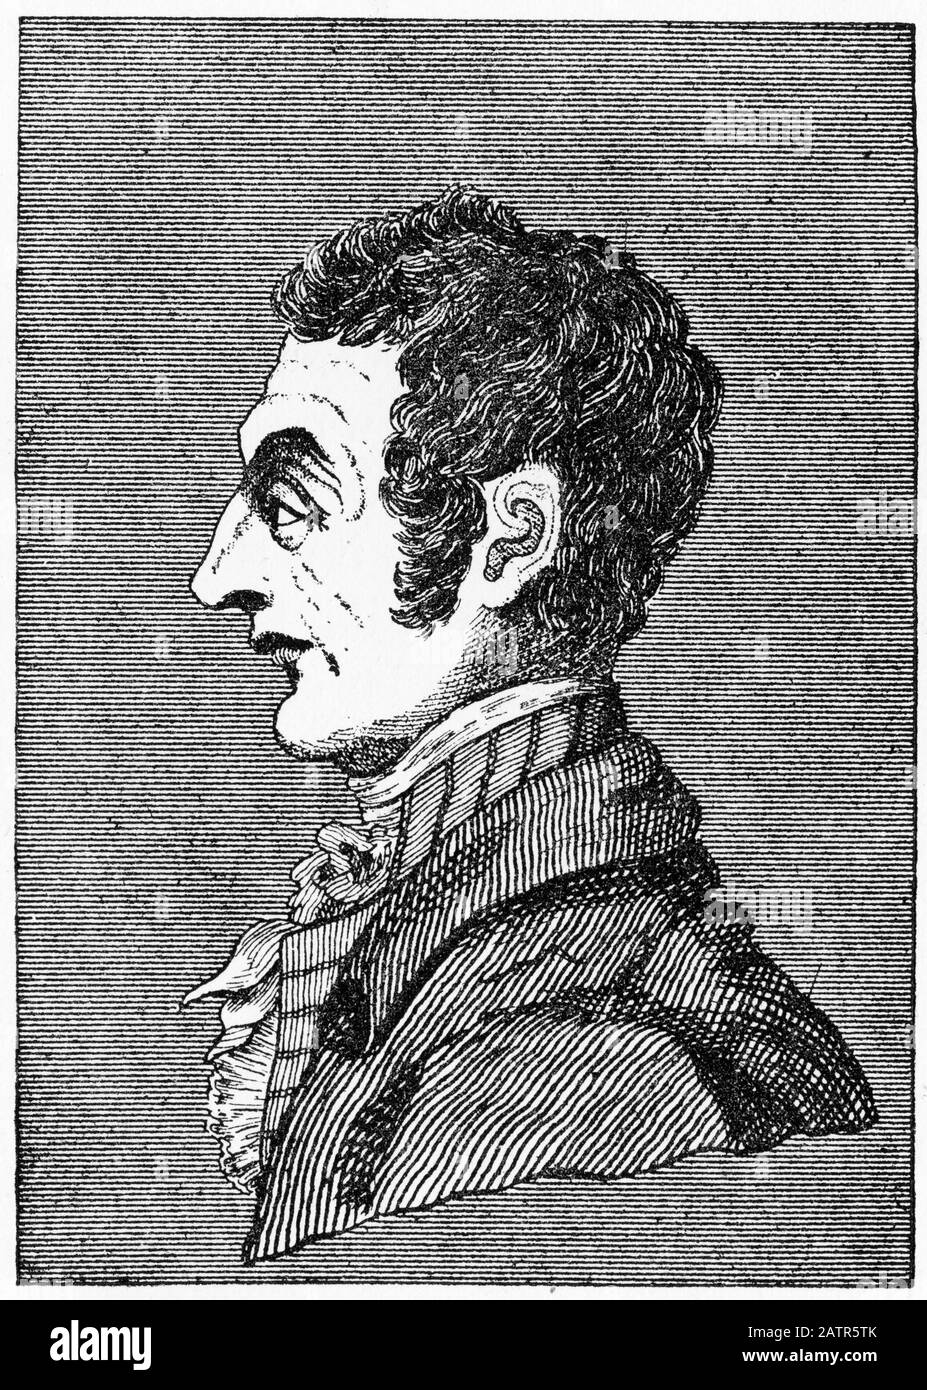 Gravure de John Bellingham (1769 – 18 mai 1812) assassin du Premier ministre britannique Spencer Perceval, pendu à la prison de Newgate, Londres, Angleterre. Des Chroniques De Newgate, 1884. Banque D'Images